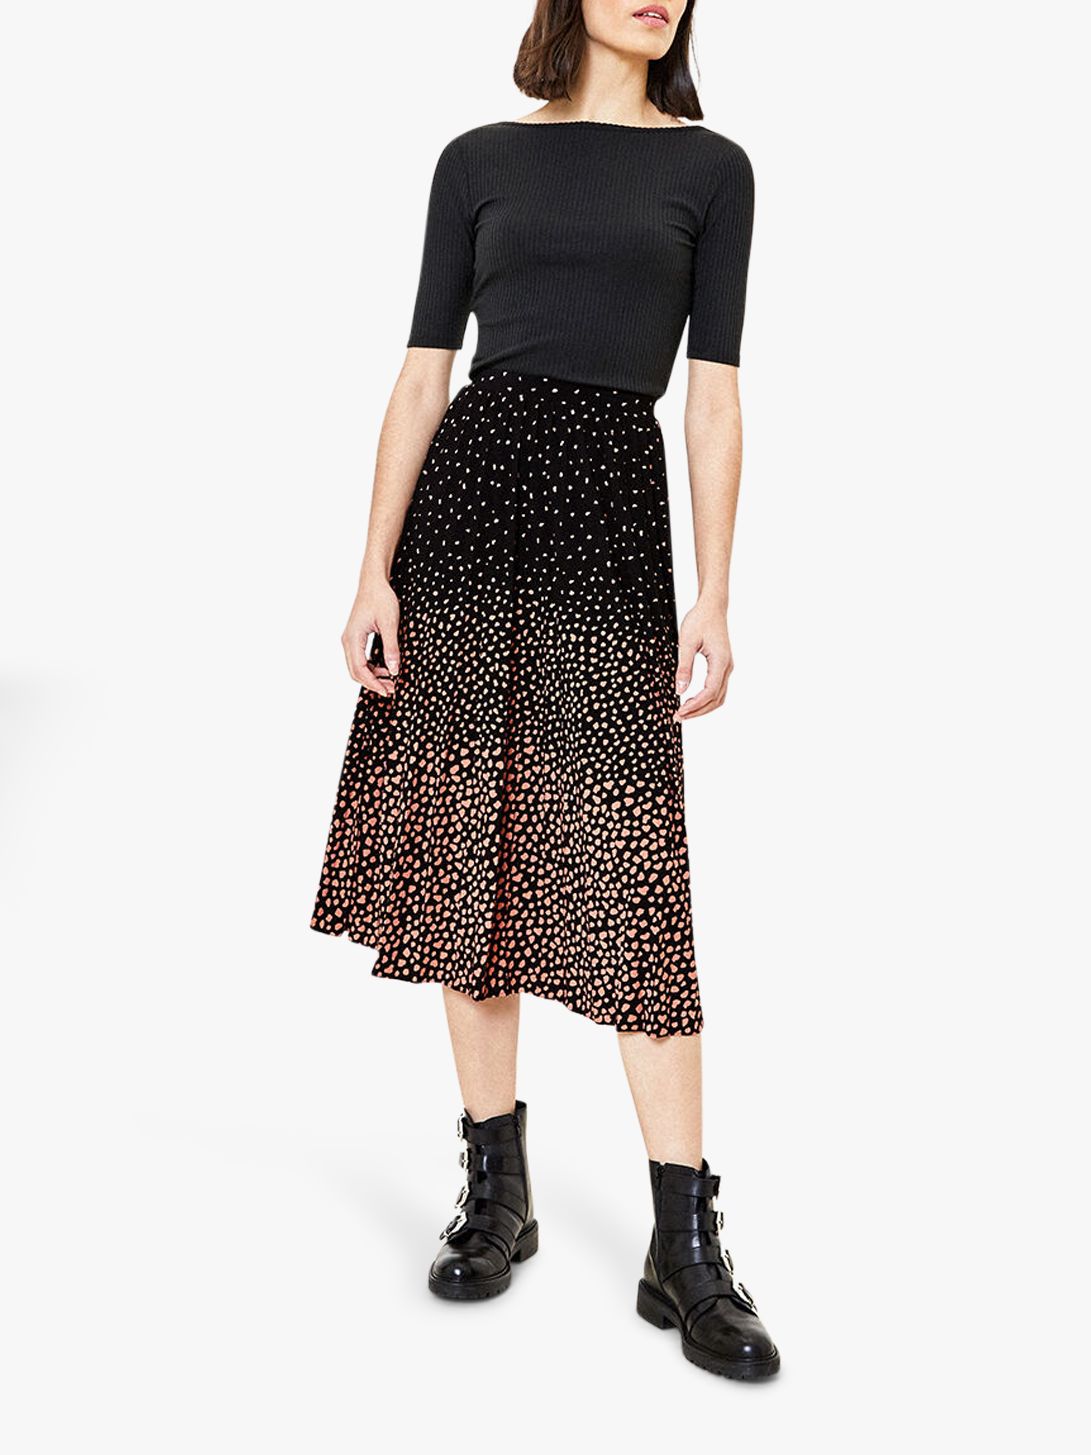 Oasis Ombre Animal Print Pleated Skirt, Black/Multi